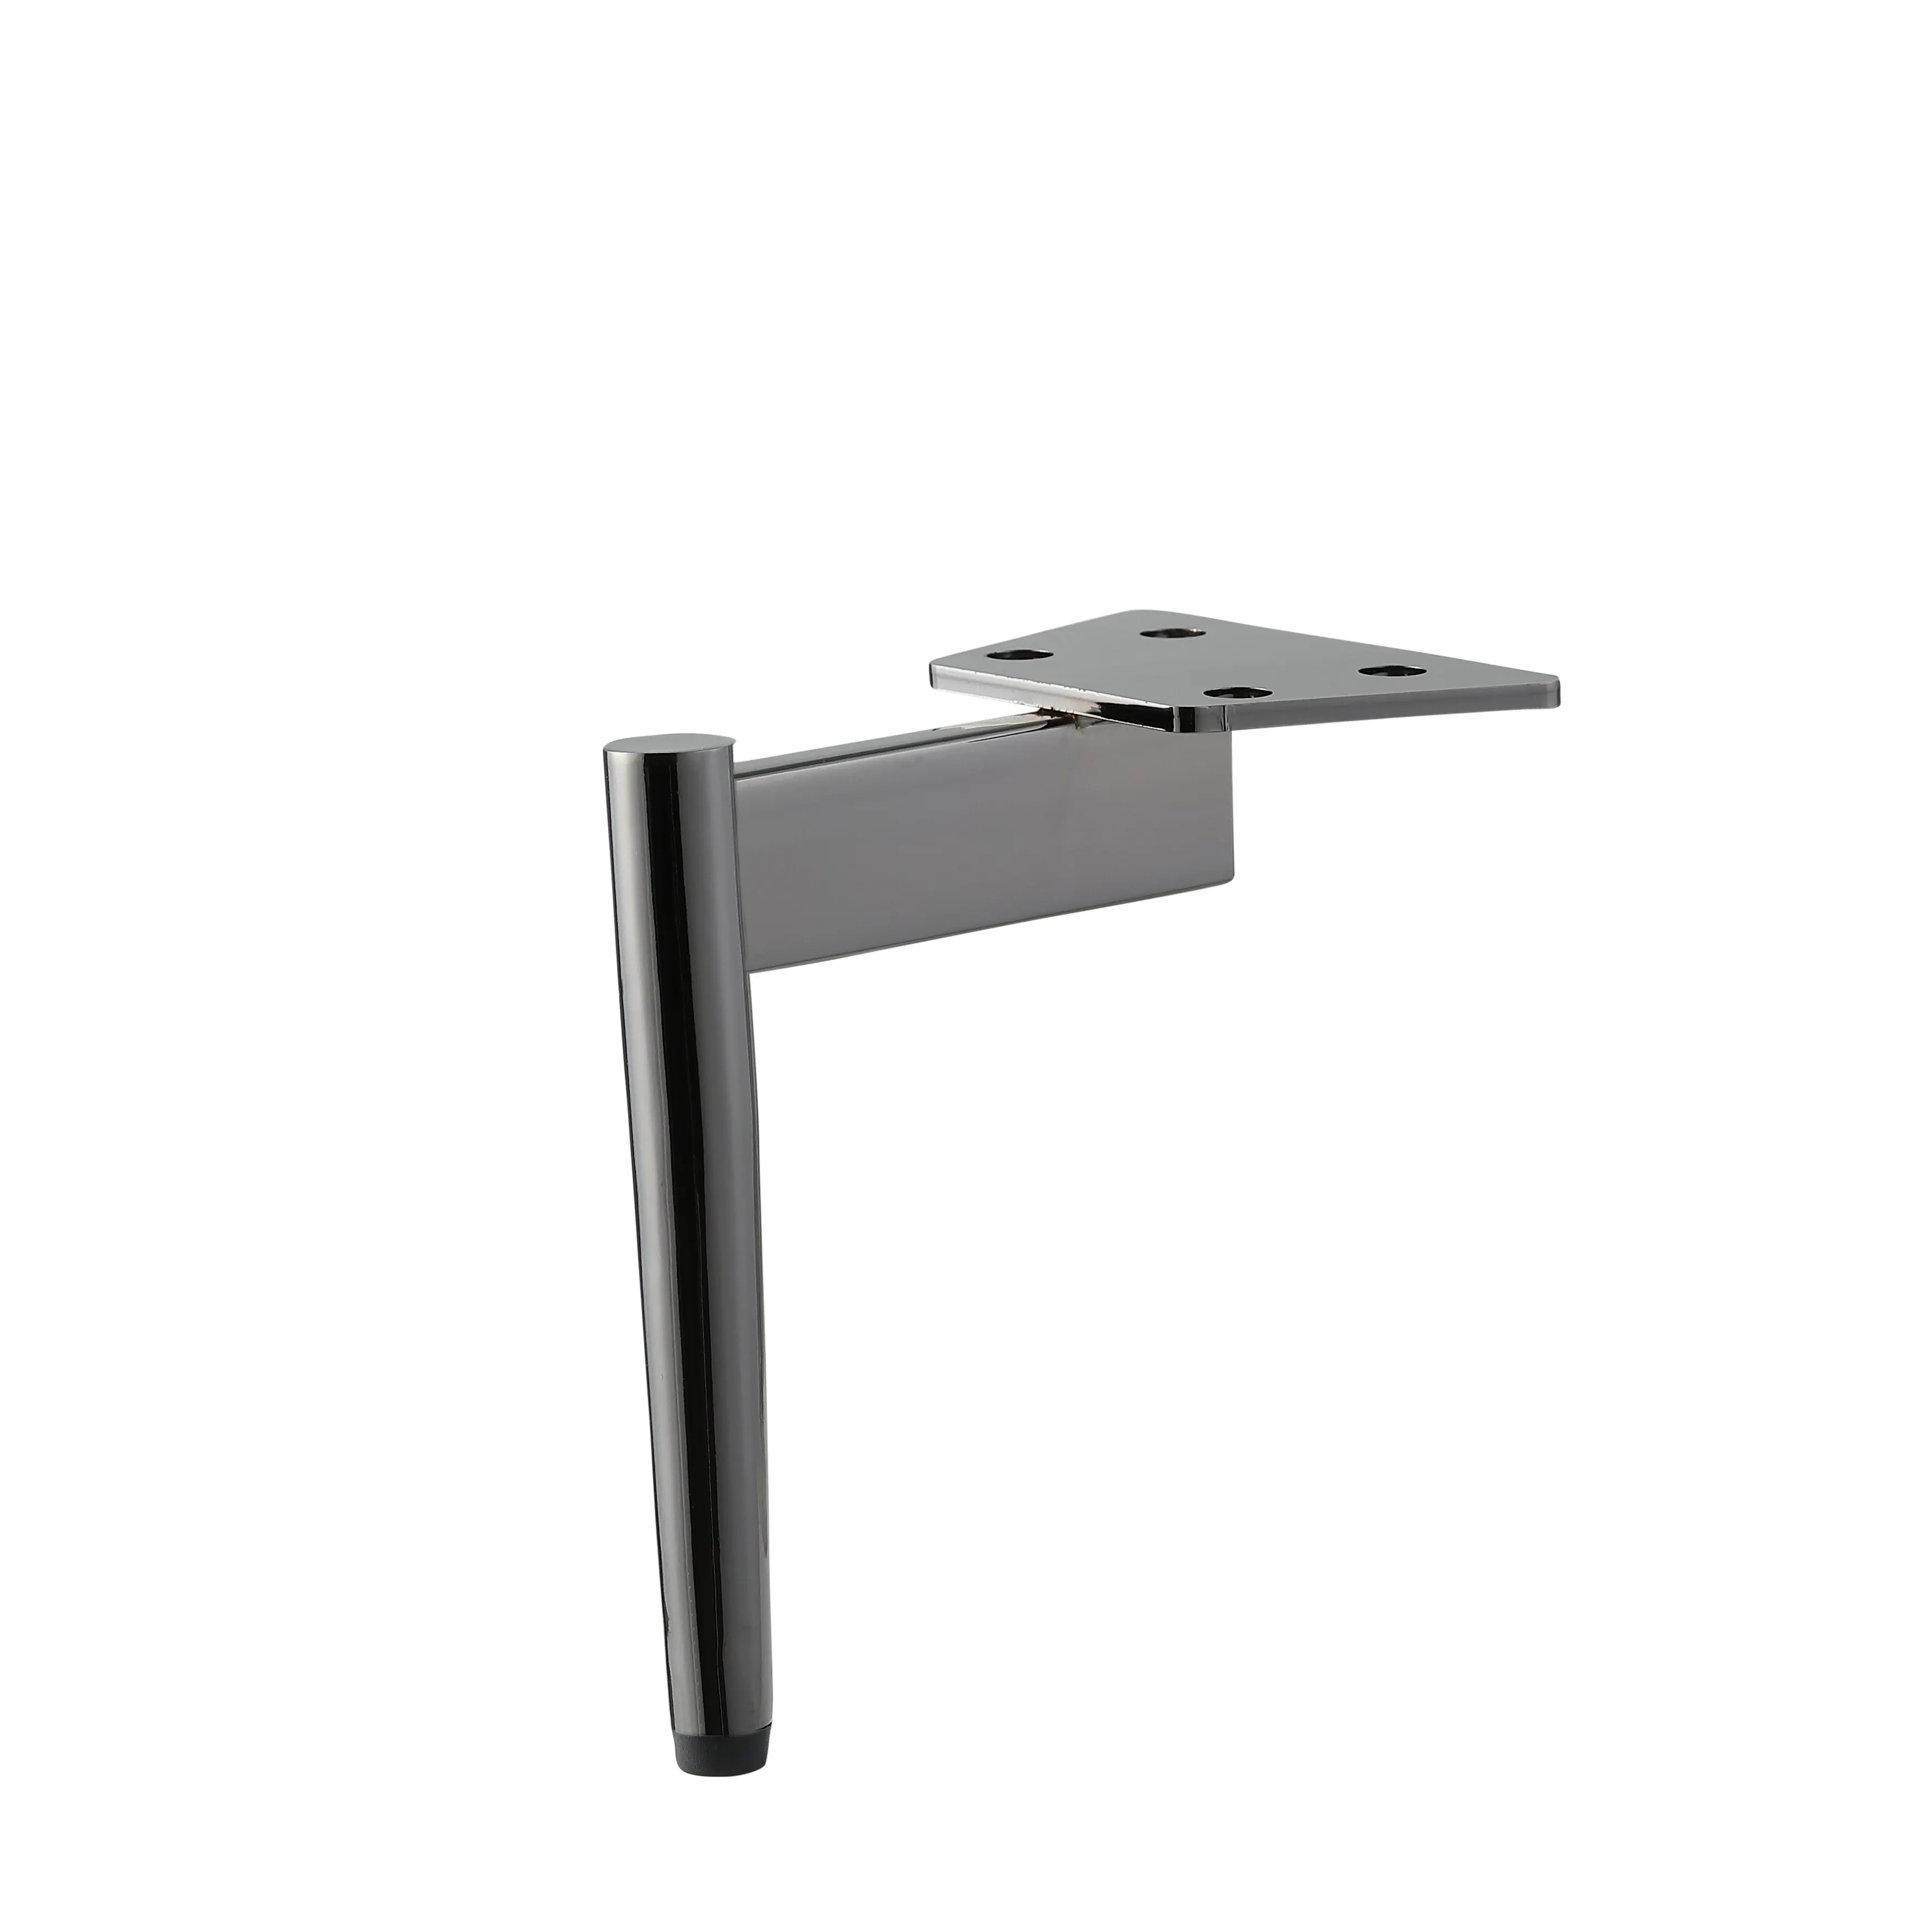 Bettbein Stuhl beine geeignet für Tisch, Schrank beine Bestseller-Produkte OEM-Logo Gedruckte Top-Qualität